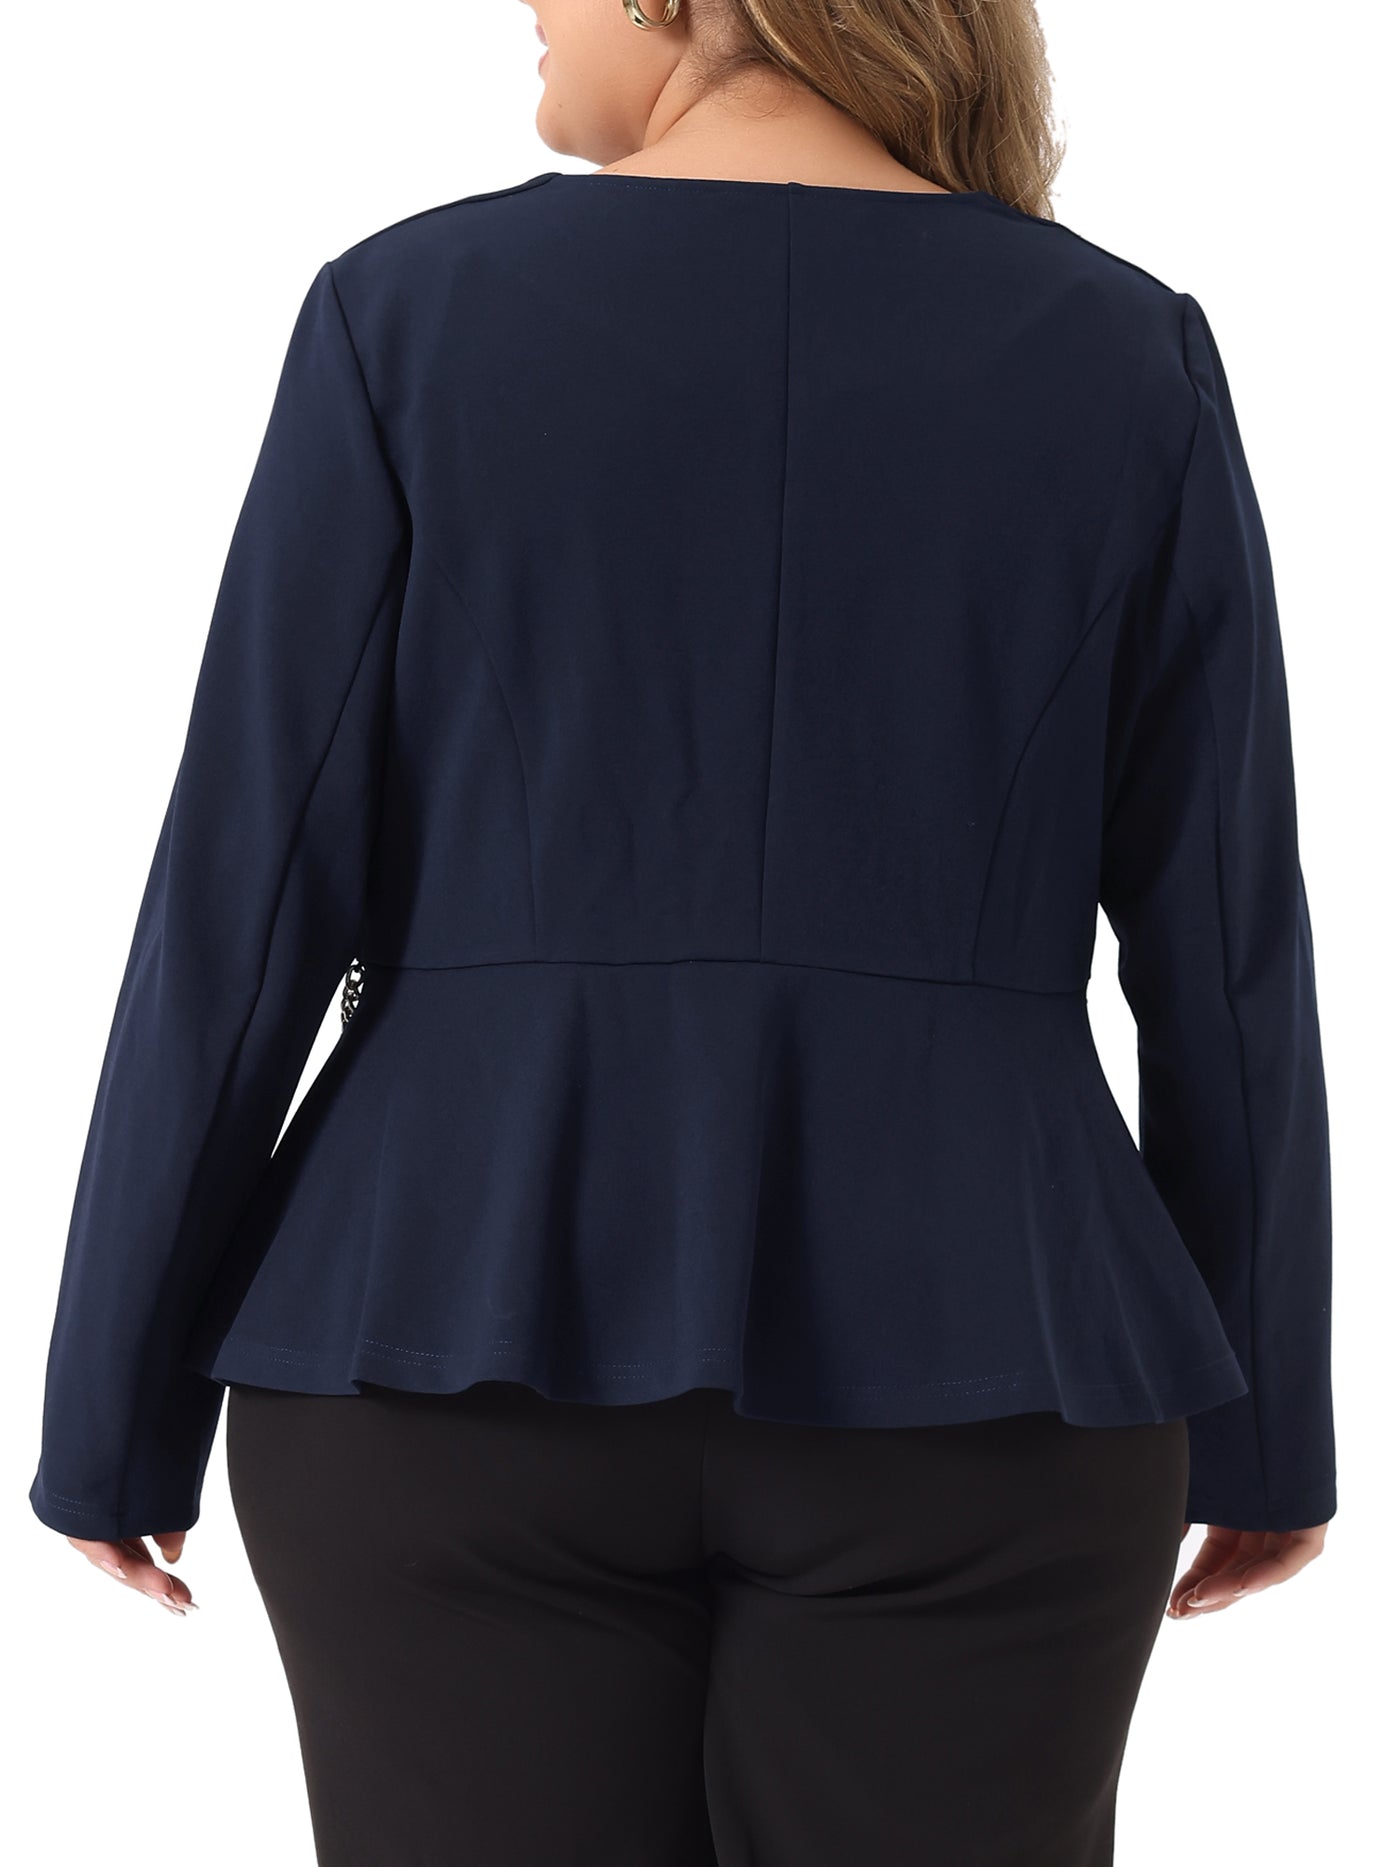 Bublédon Plus Size Blazer for Women Work Fashion Button Chain Jacket Blazers